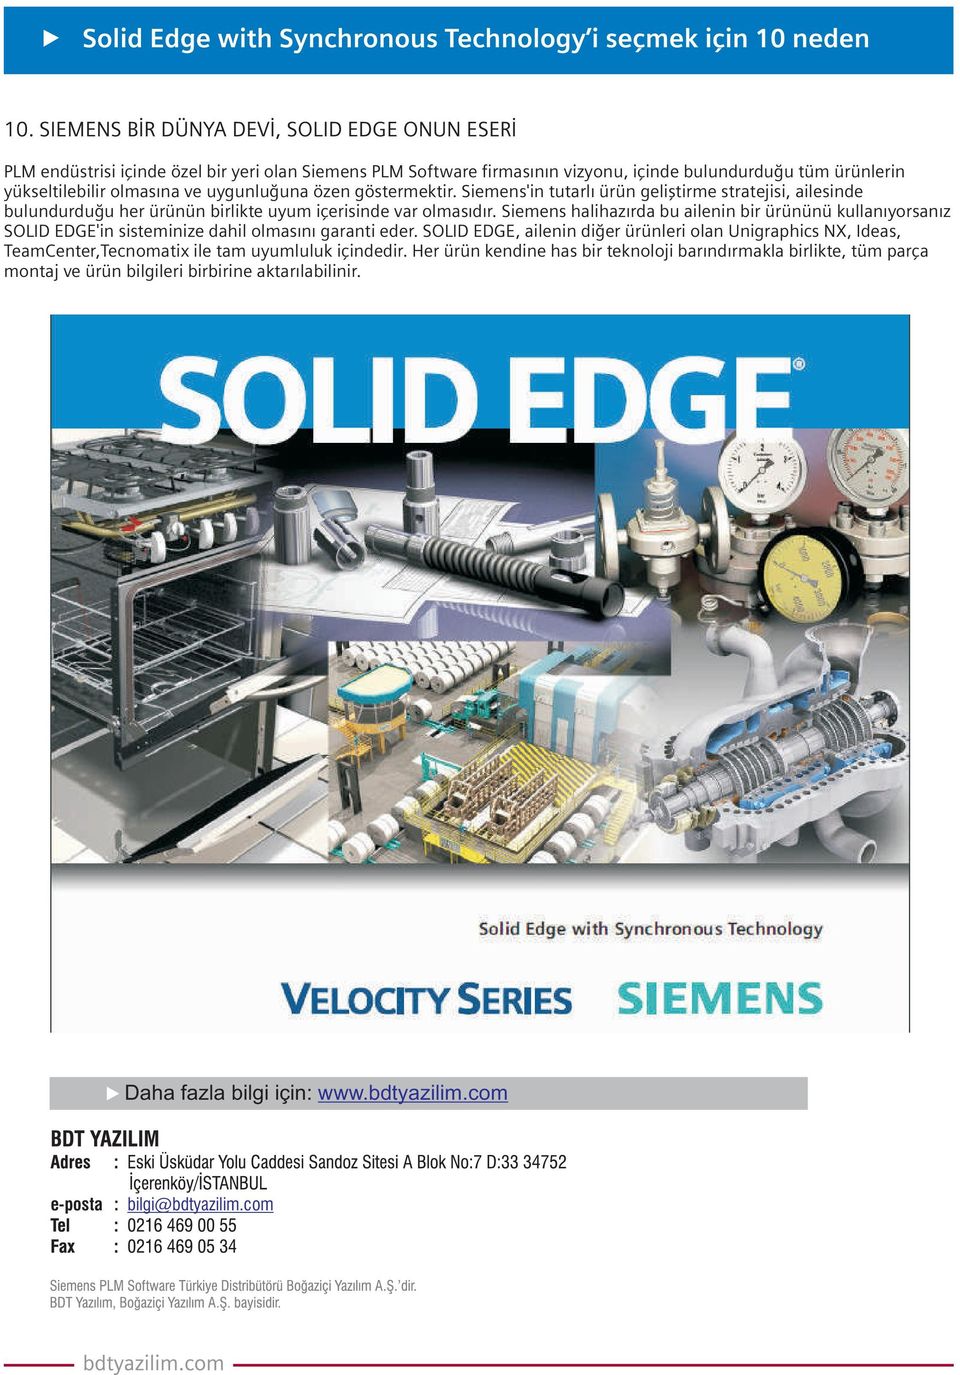 Siemens halihazýrda bu ailenin bir ürününü kullanýyorsanýz SOLID EDGE'in sisteminize dahil olmasýný garanti eder.